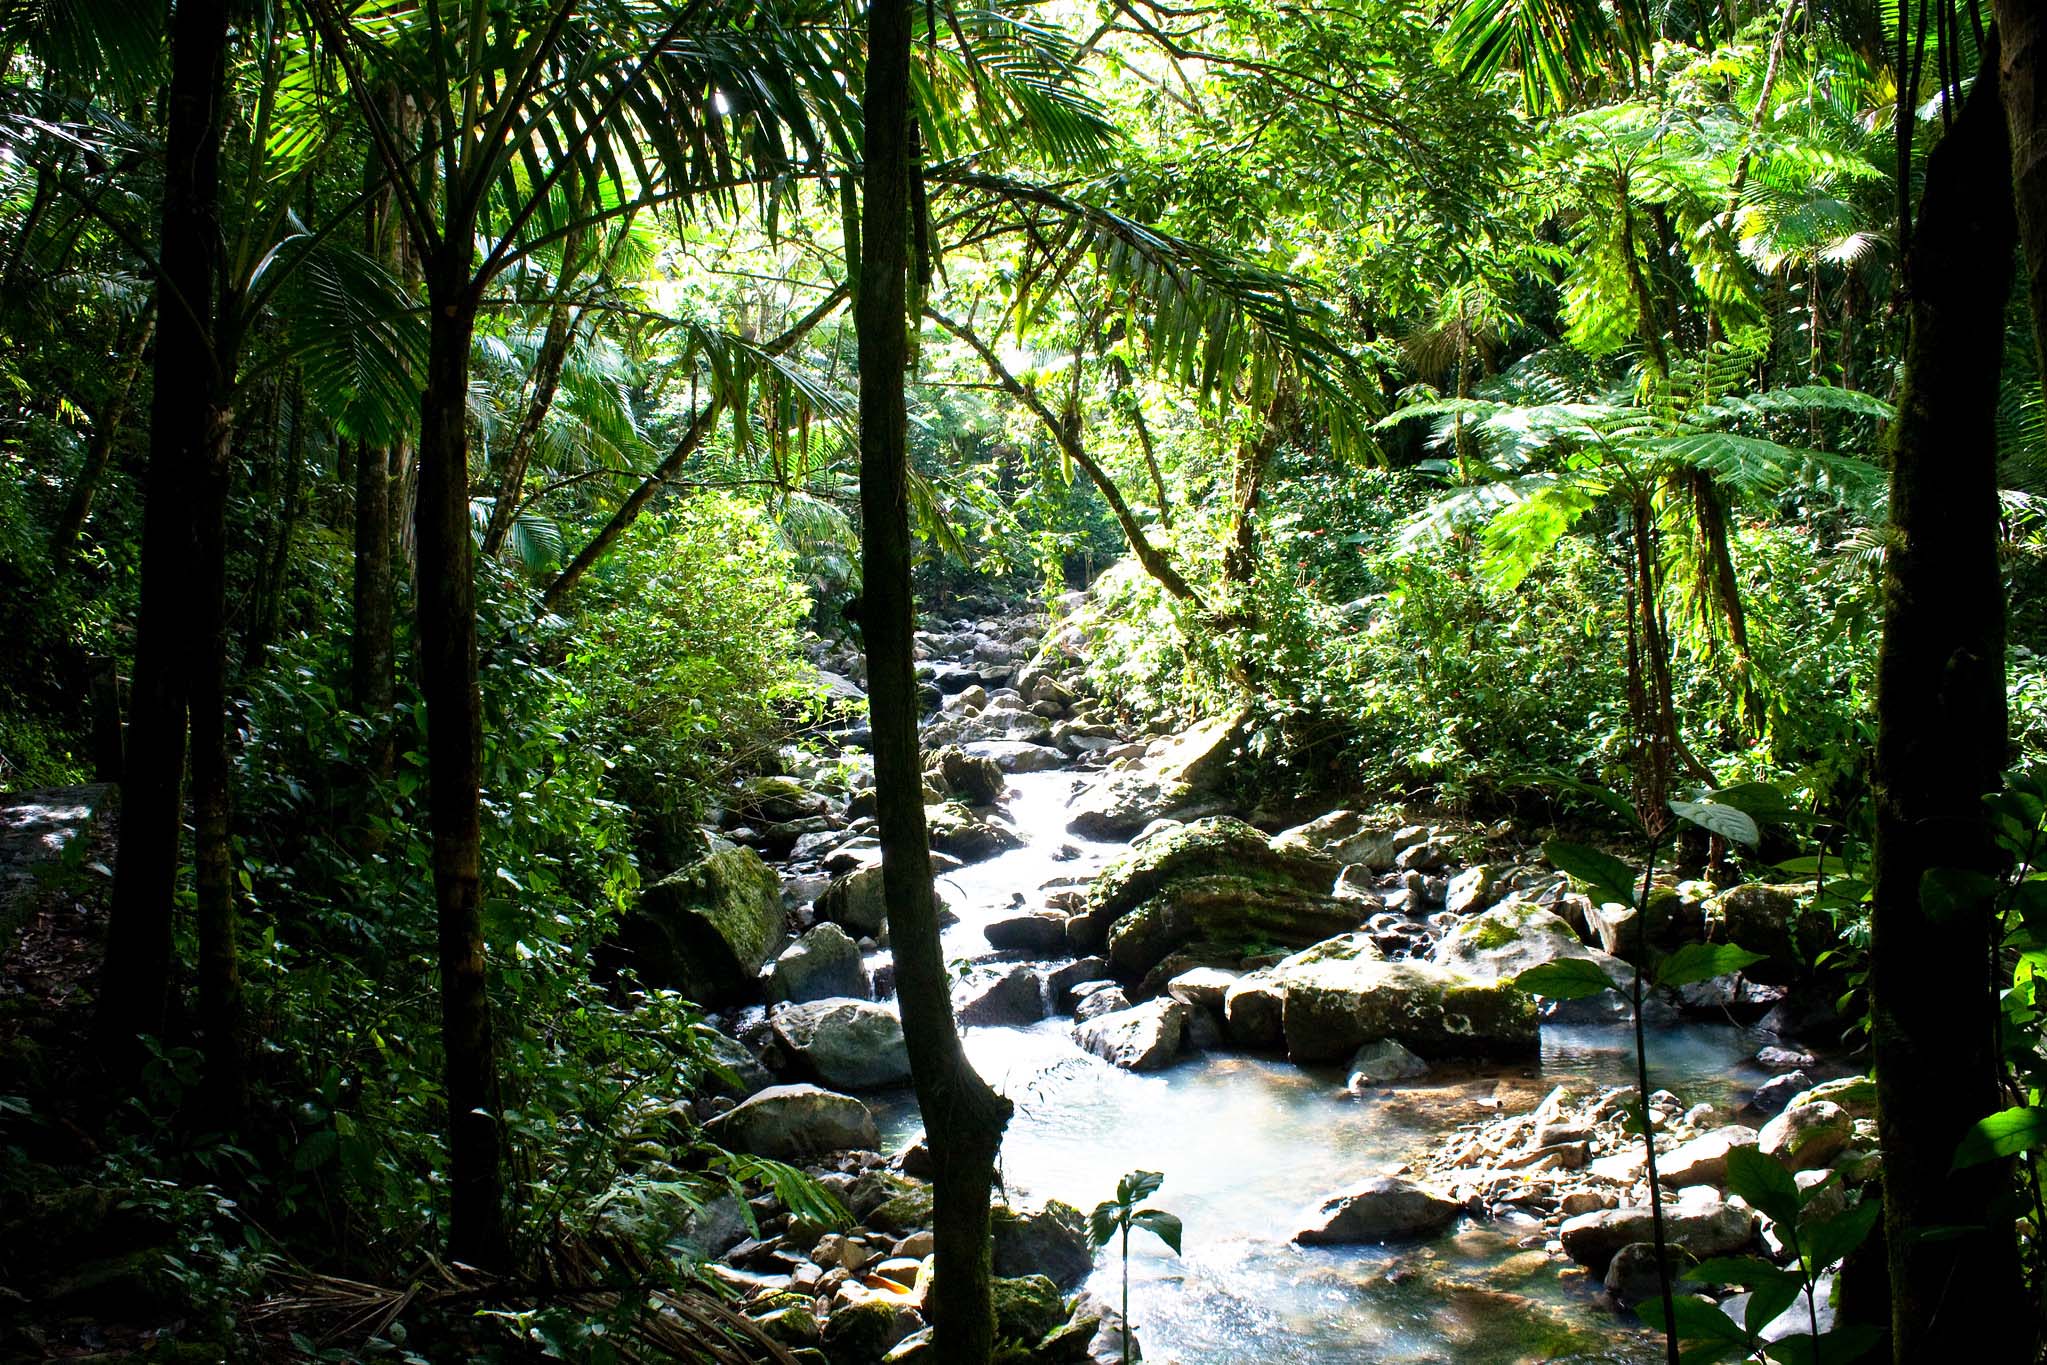 A sunlit rocky stream running through a rainforest